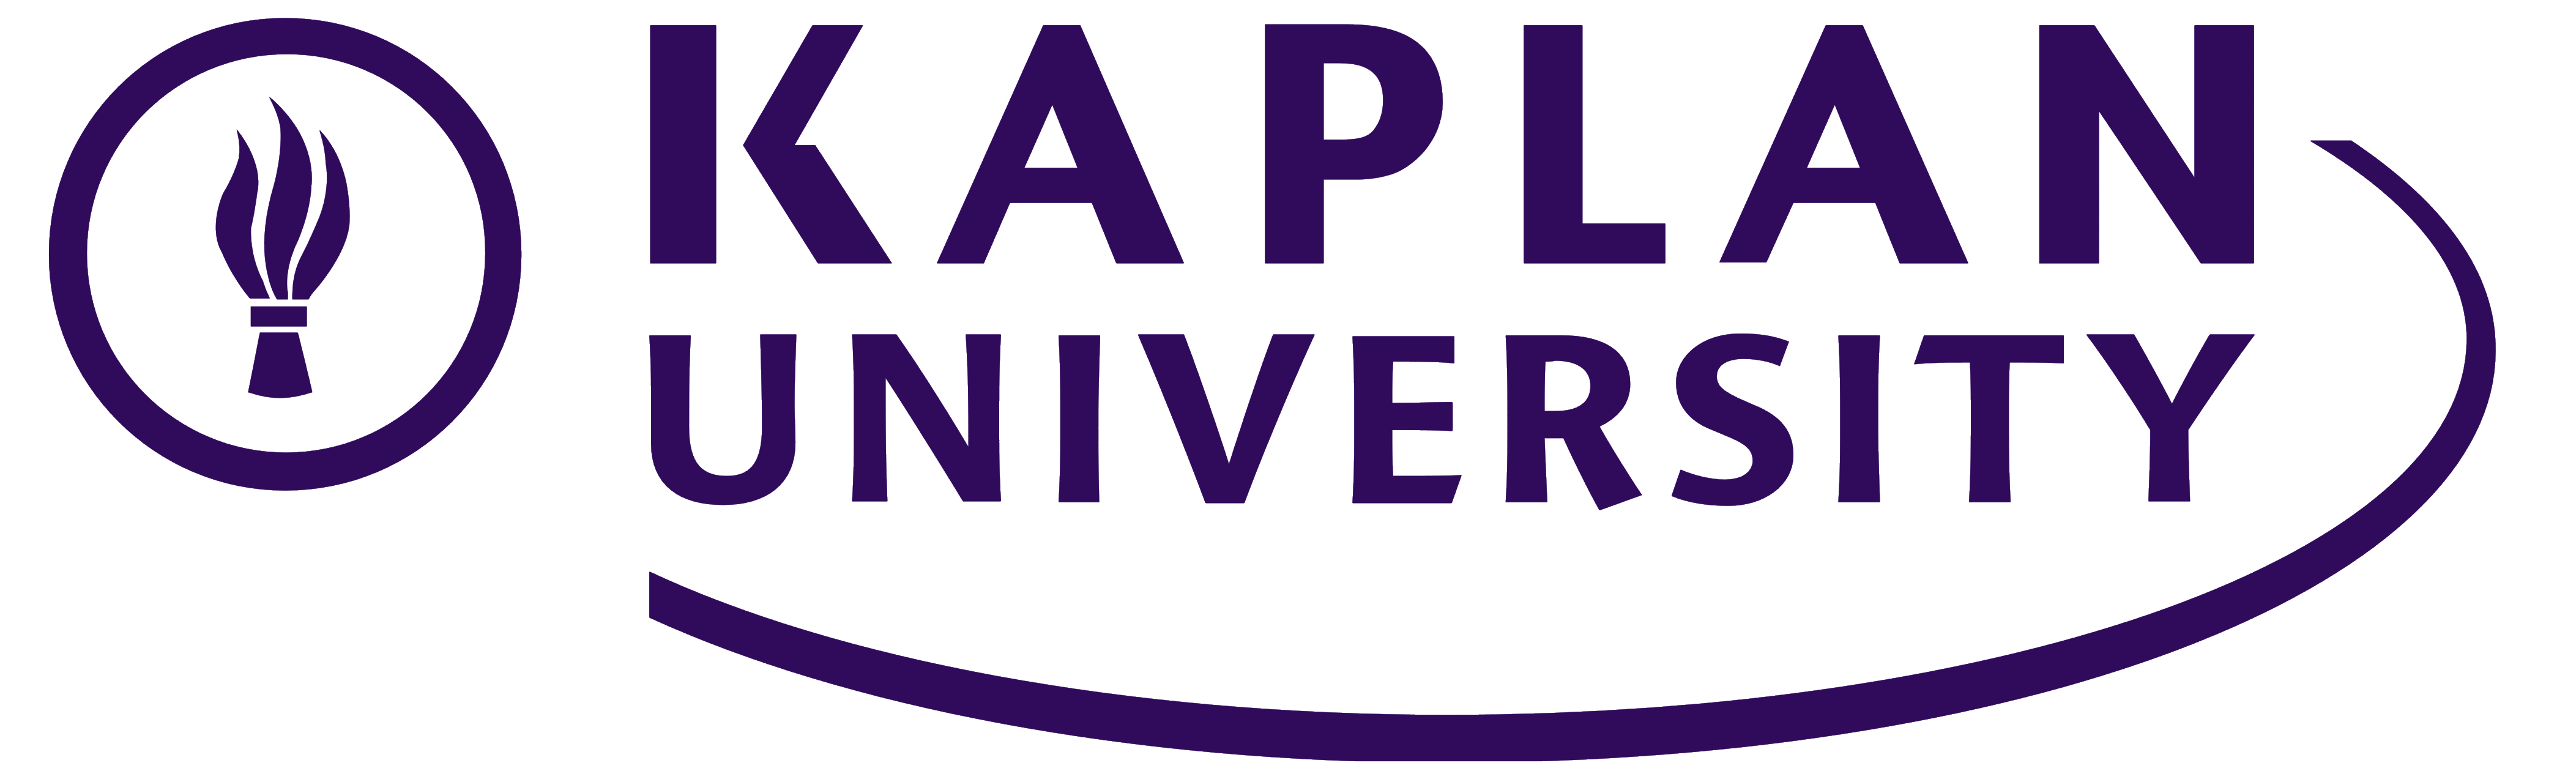 Kaplan Logos Download